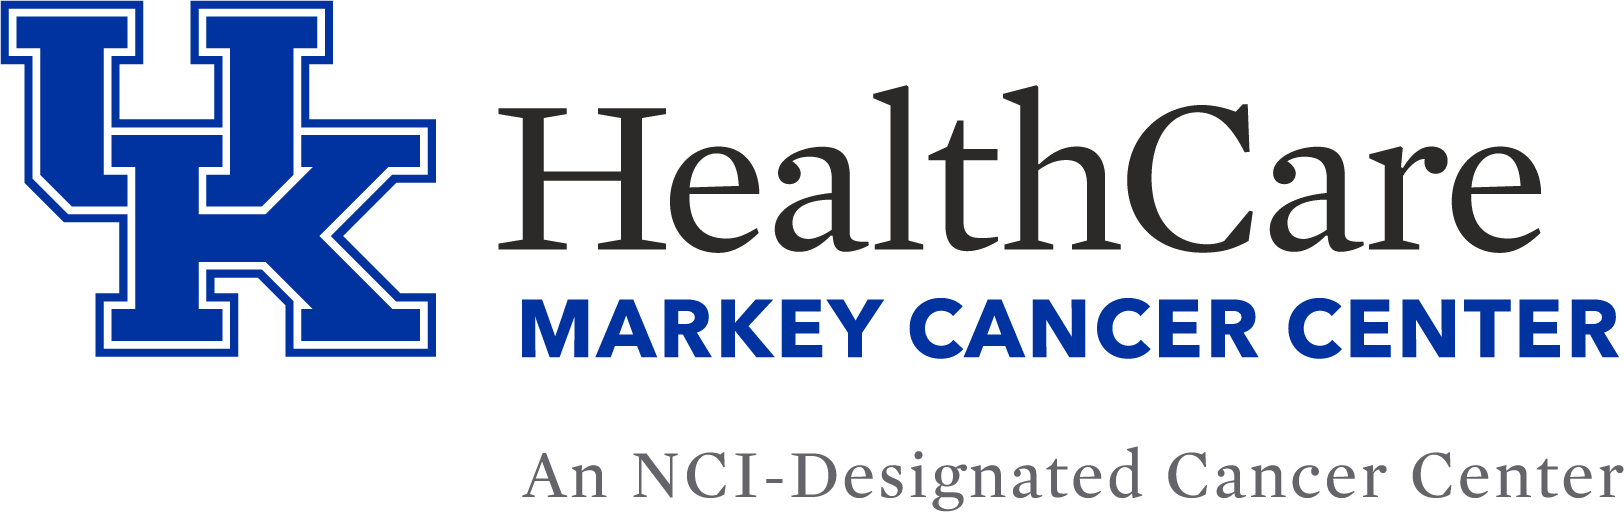 Uk Markey - Uk Markey Cancer Center (1624x512)